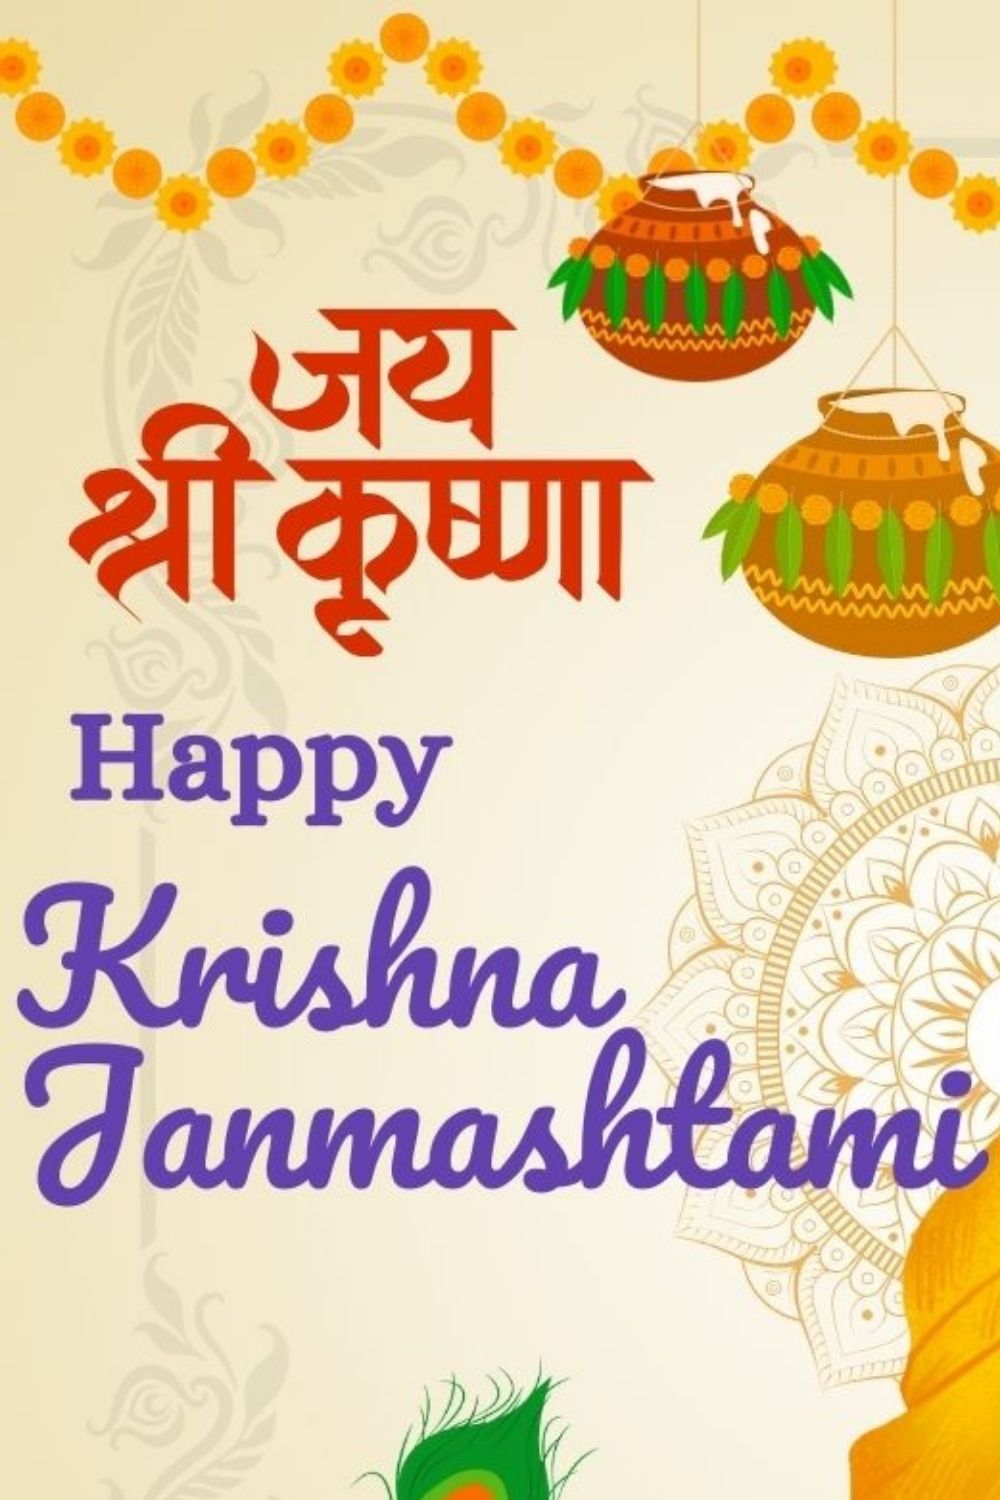 Happy Krishna Janmashtami Festival Post Design! pinterest preview image.